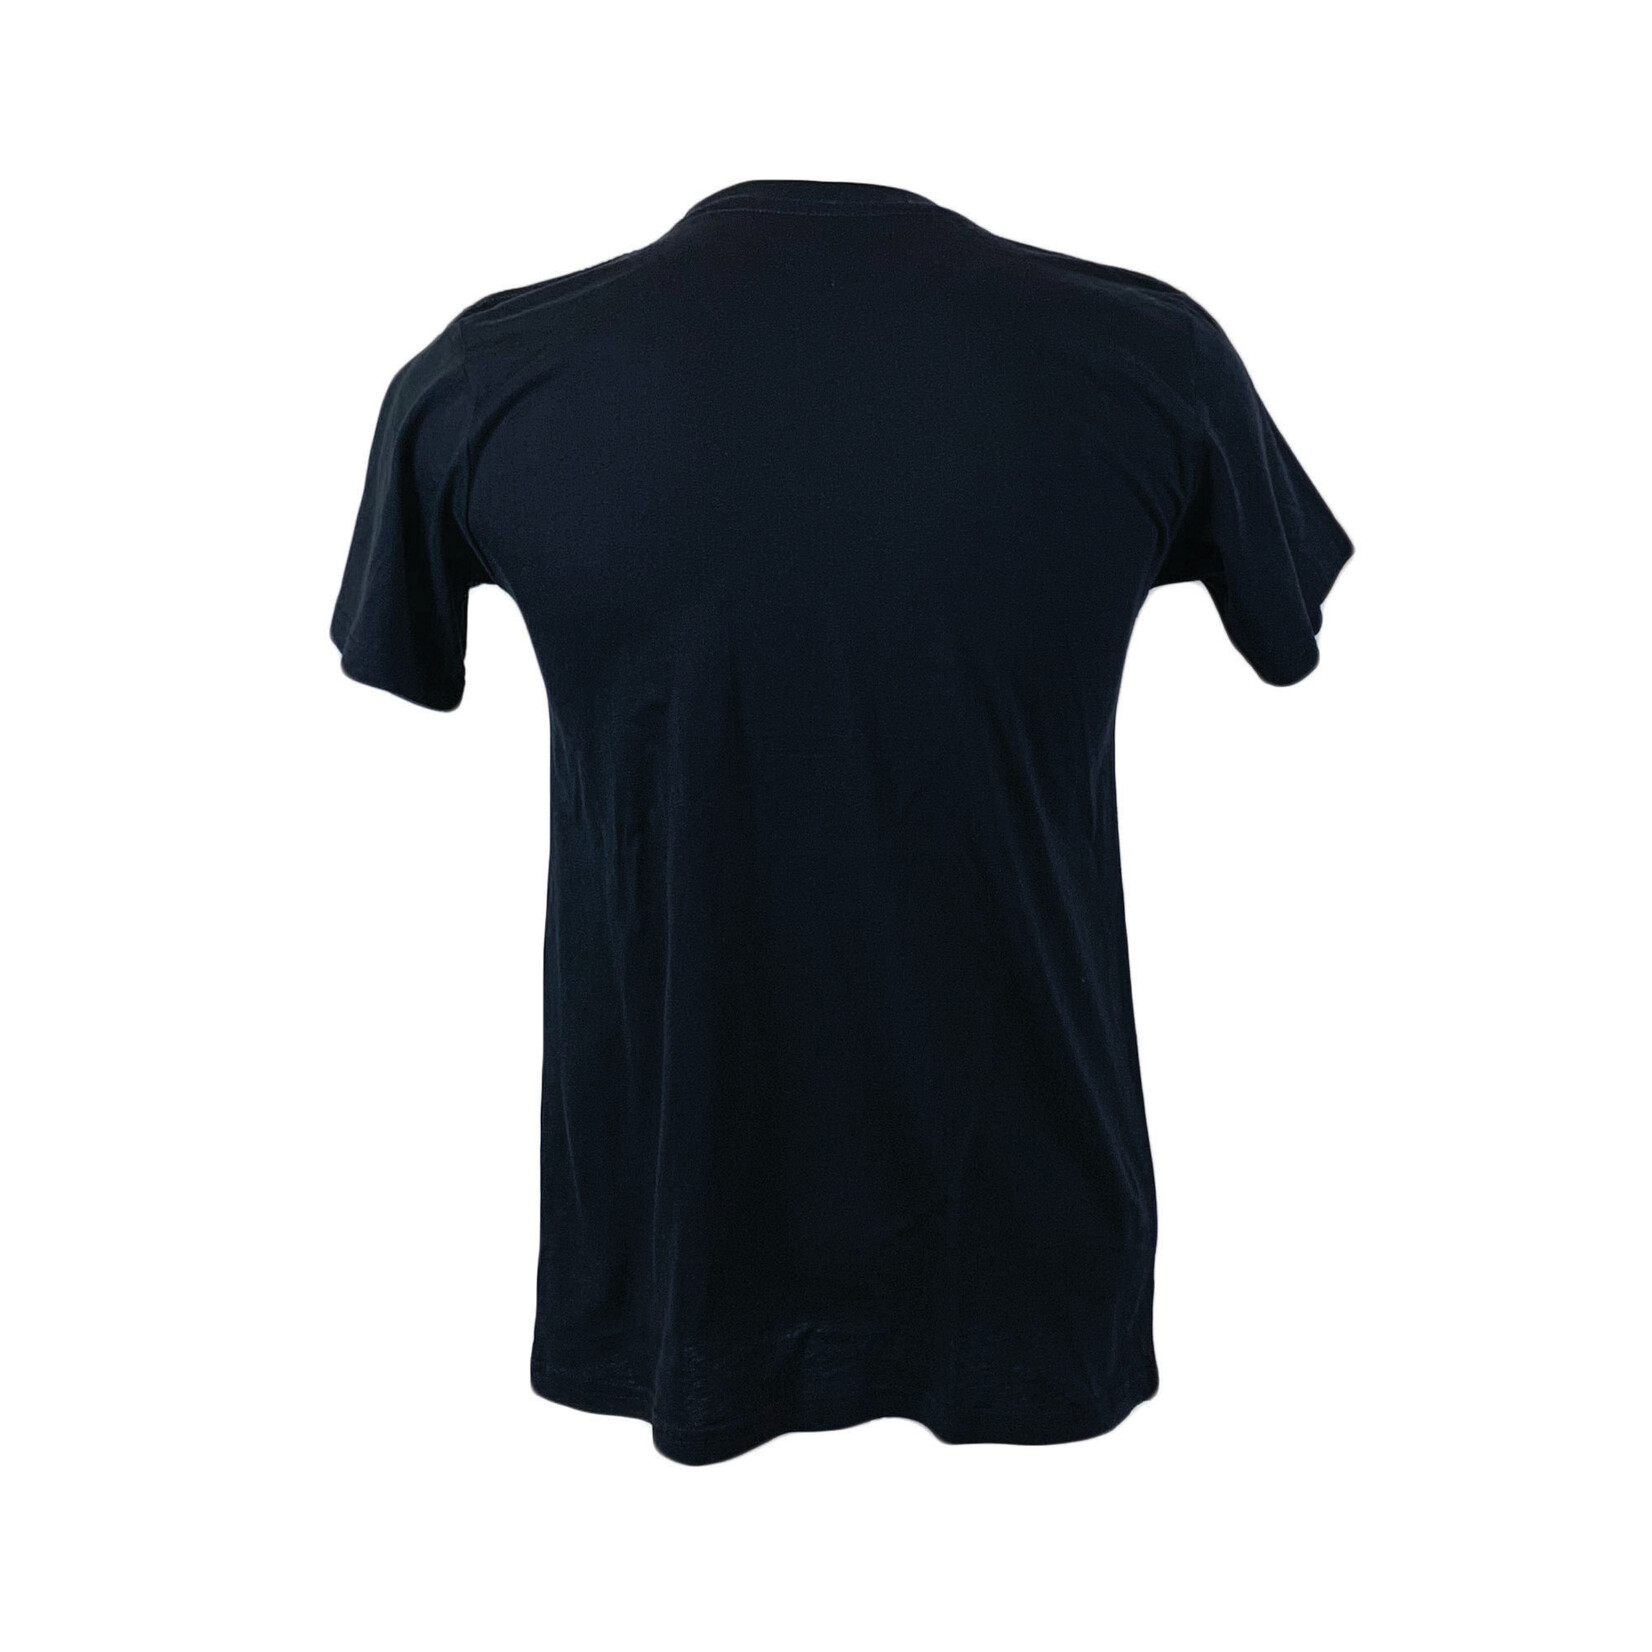 REDBLACKS Logan Shirt - Black - Lansdowne Sports